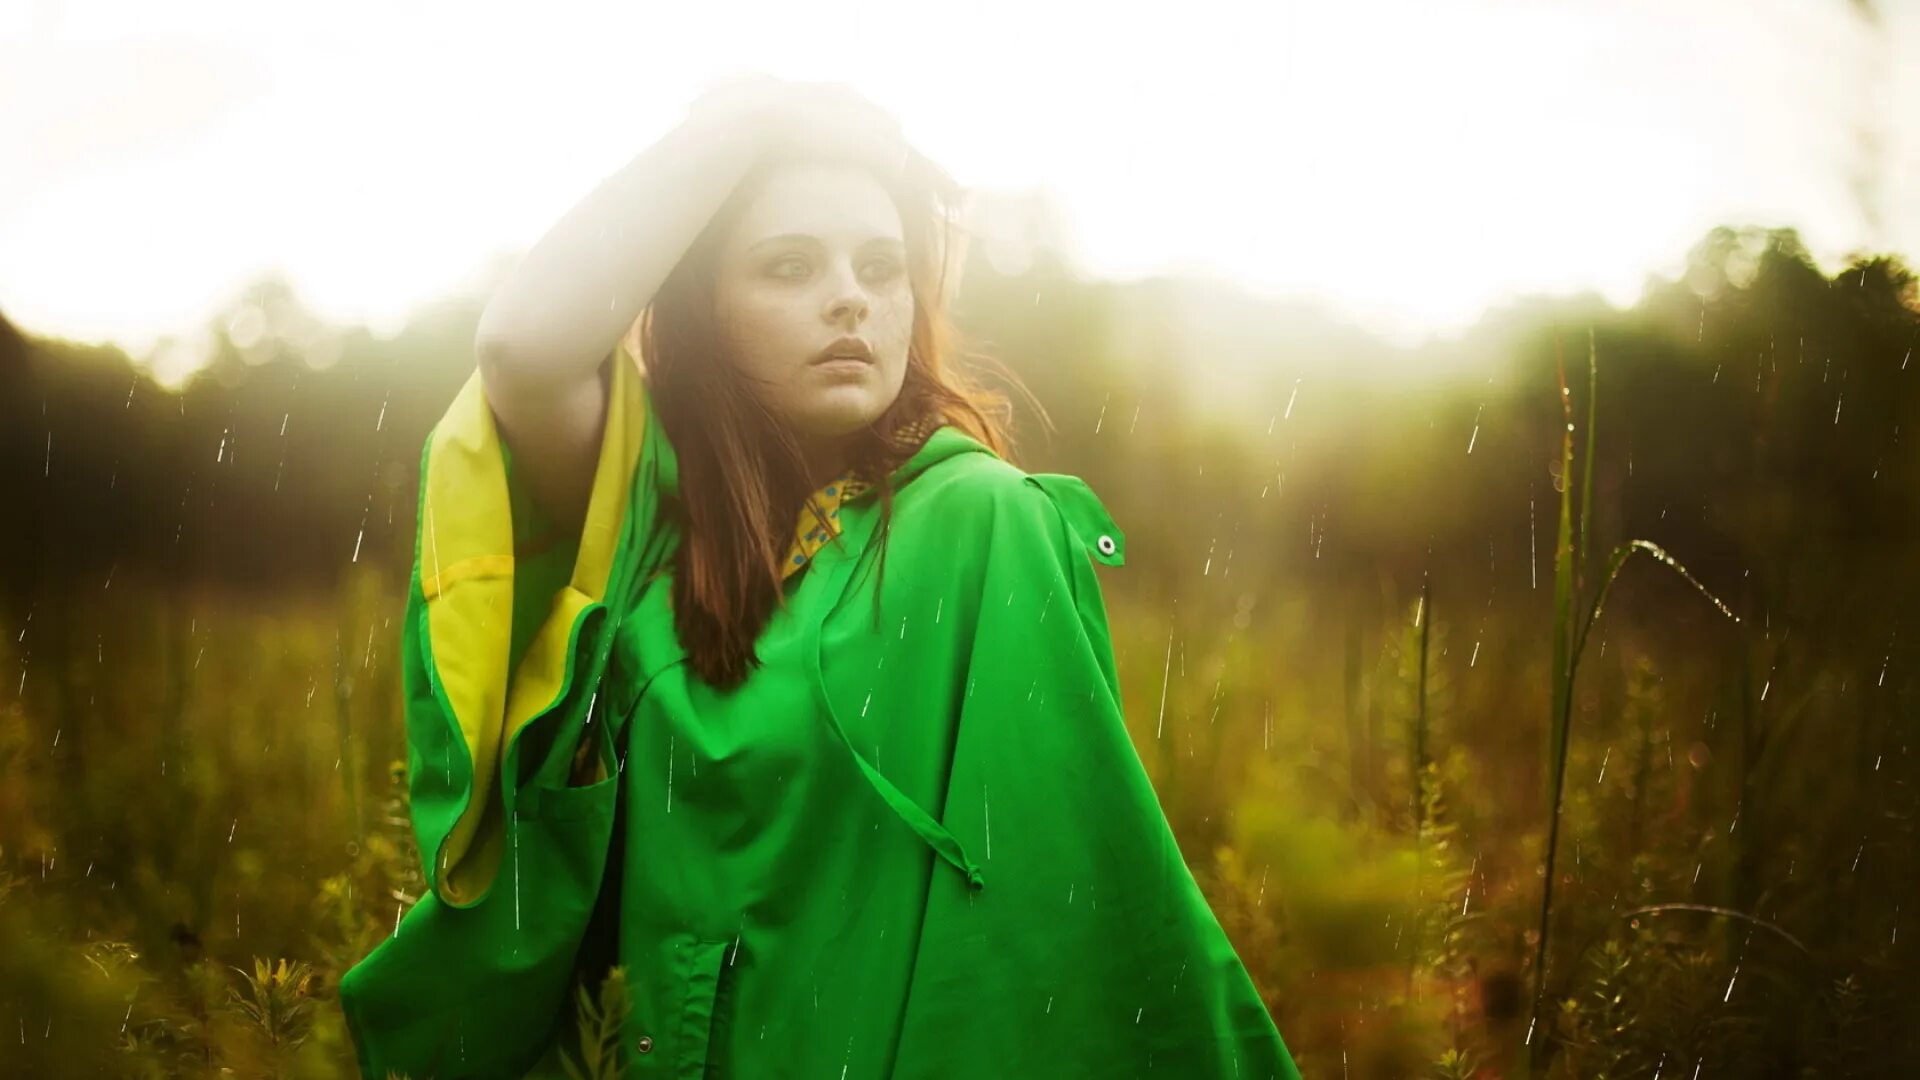 Песни мой свет и дождь. Девушка дождь. Девушка под дождем. Девушка на фоне дождя. Девушка в зеленом свете.